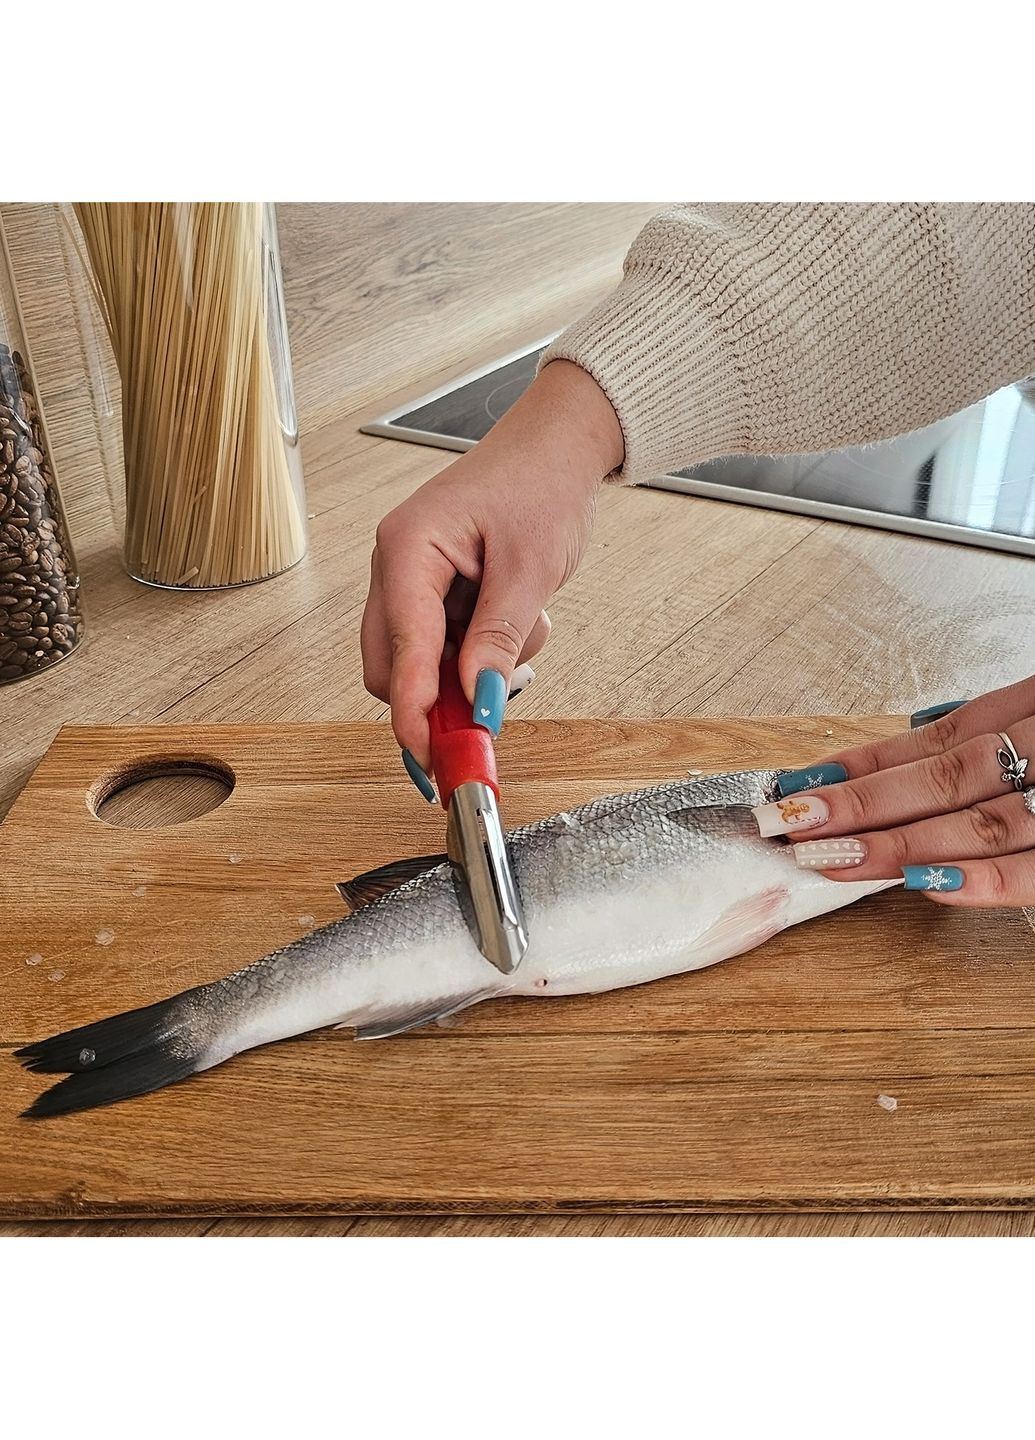 Рыбочистка нож для чистки рыбы и удаления сердцевин с картофеля, яблок, груш и перцев 18 см Kitchette (277962655)